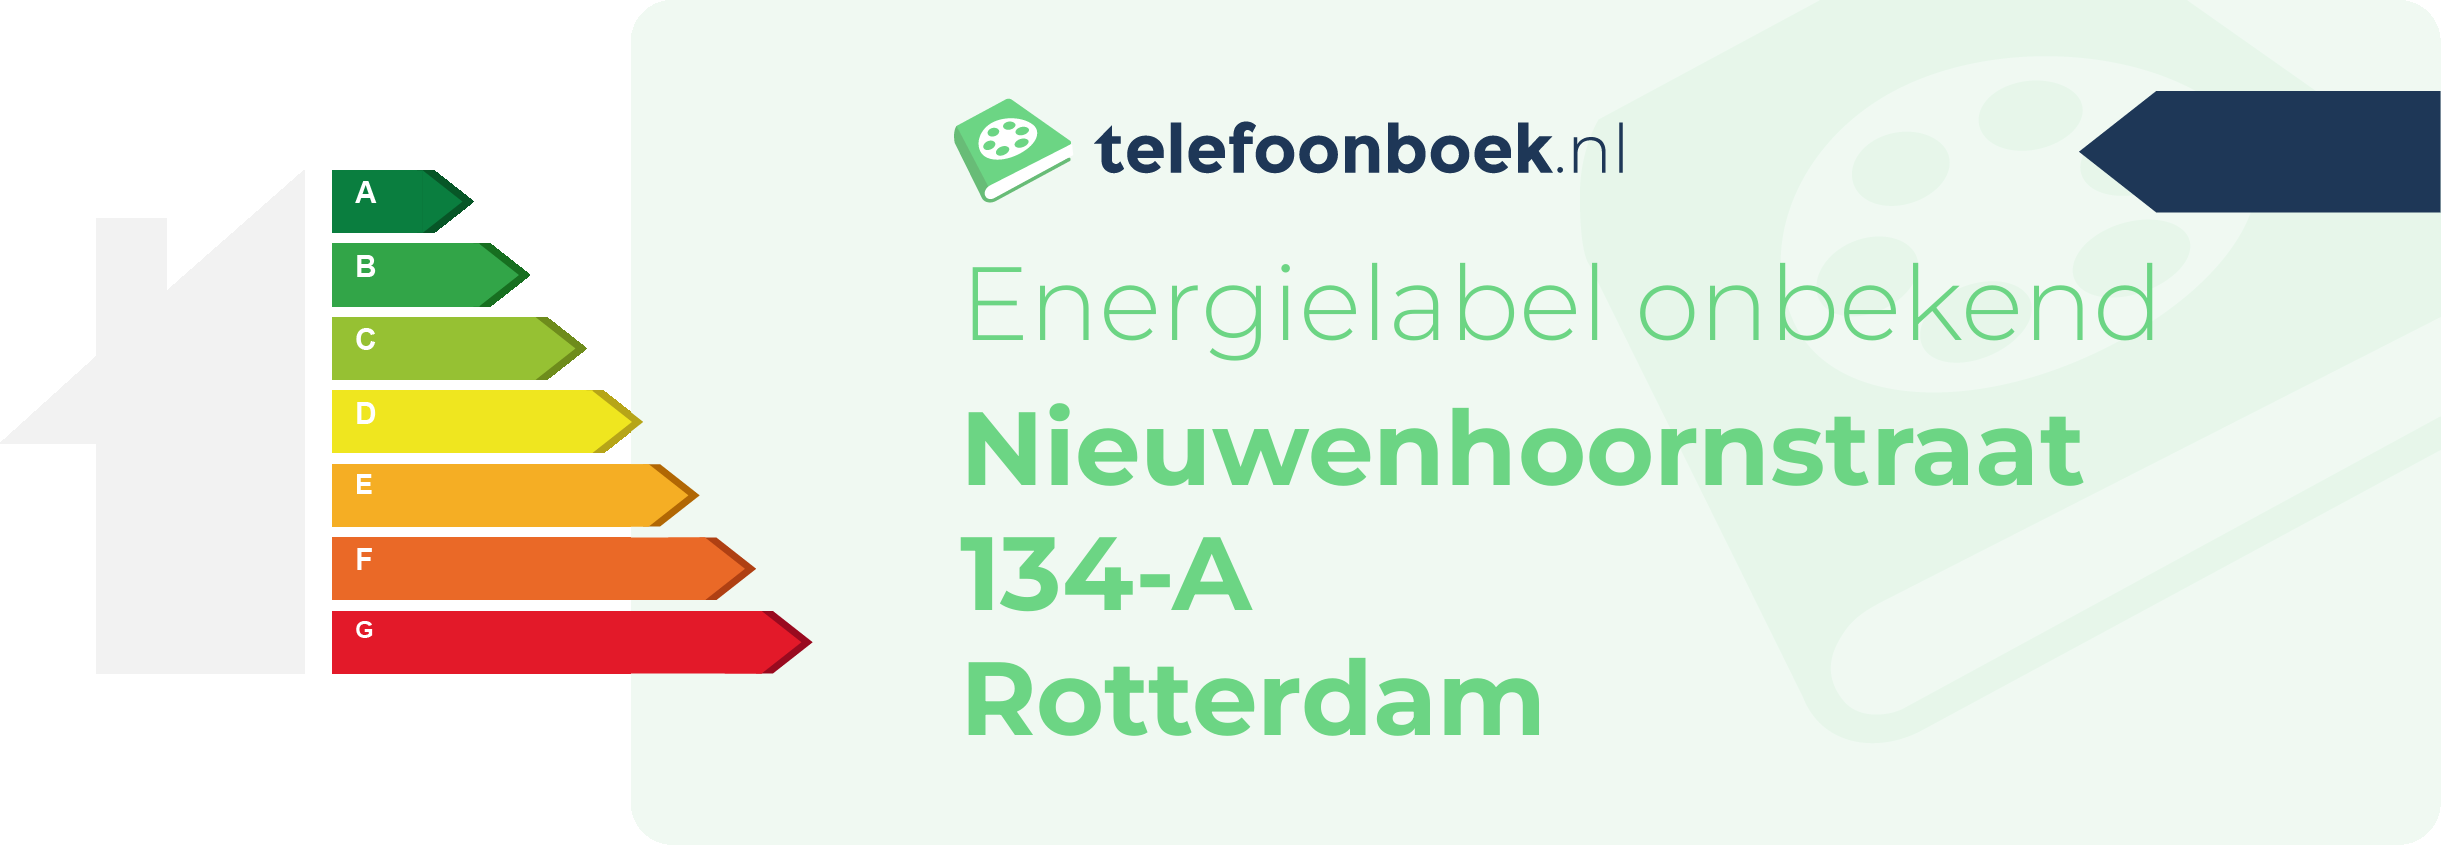 Energielabel Nieuwenhoornstraat 134-A Rotterdam